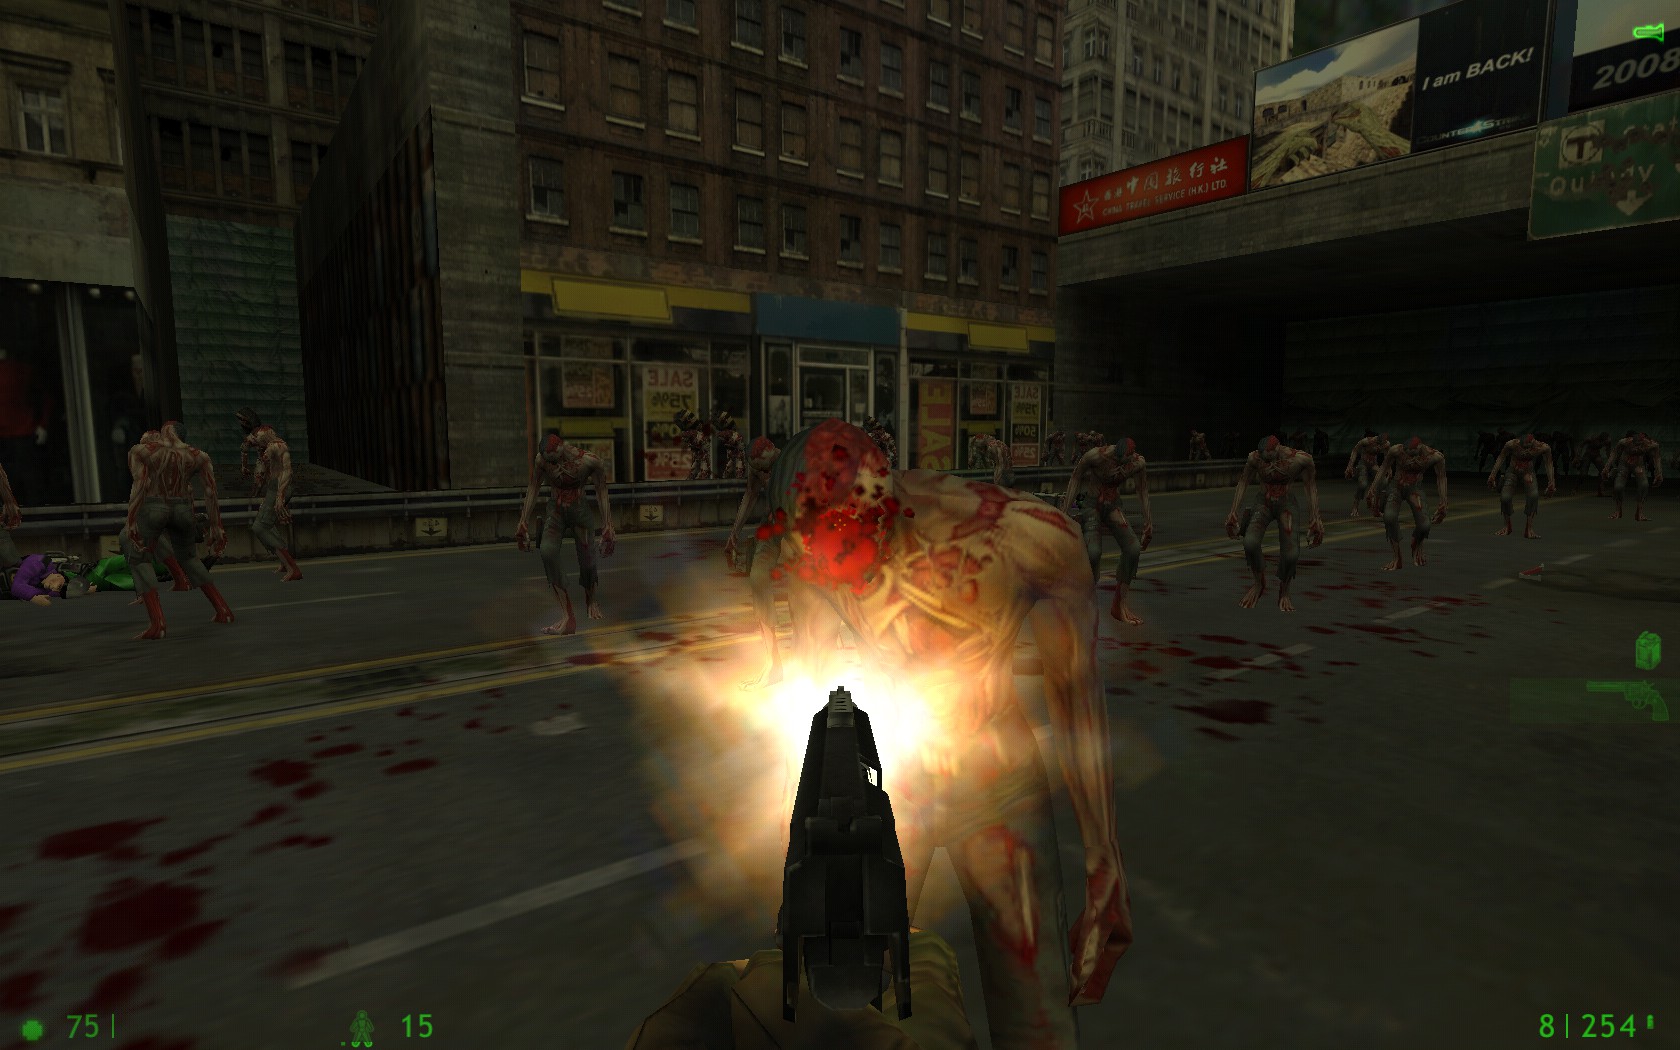 New Update image - Zombie Scenario mod for Half-Life.